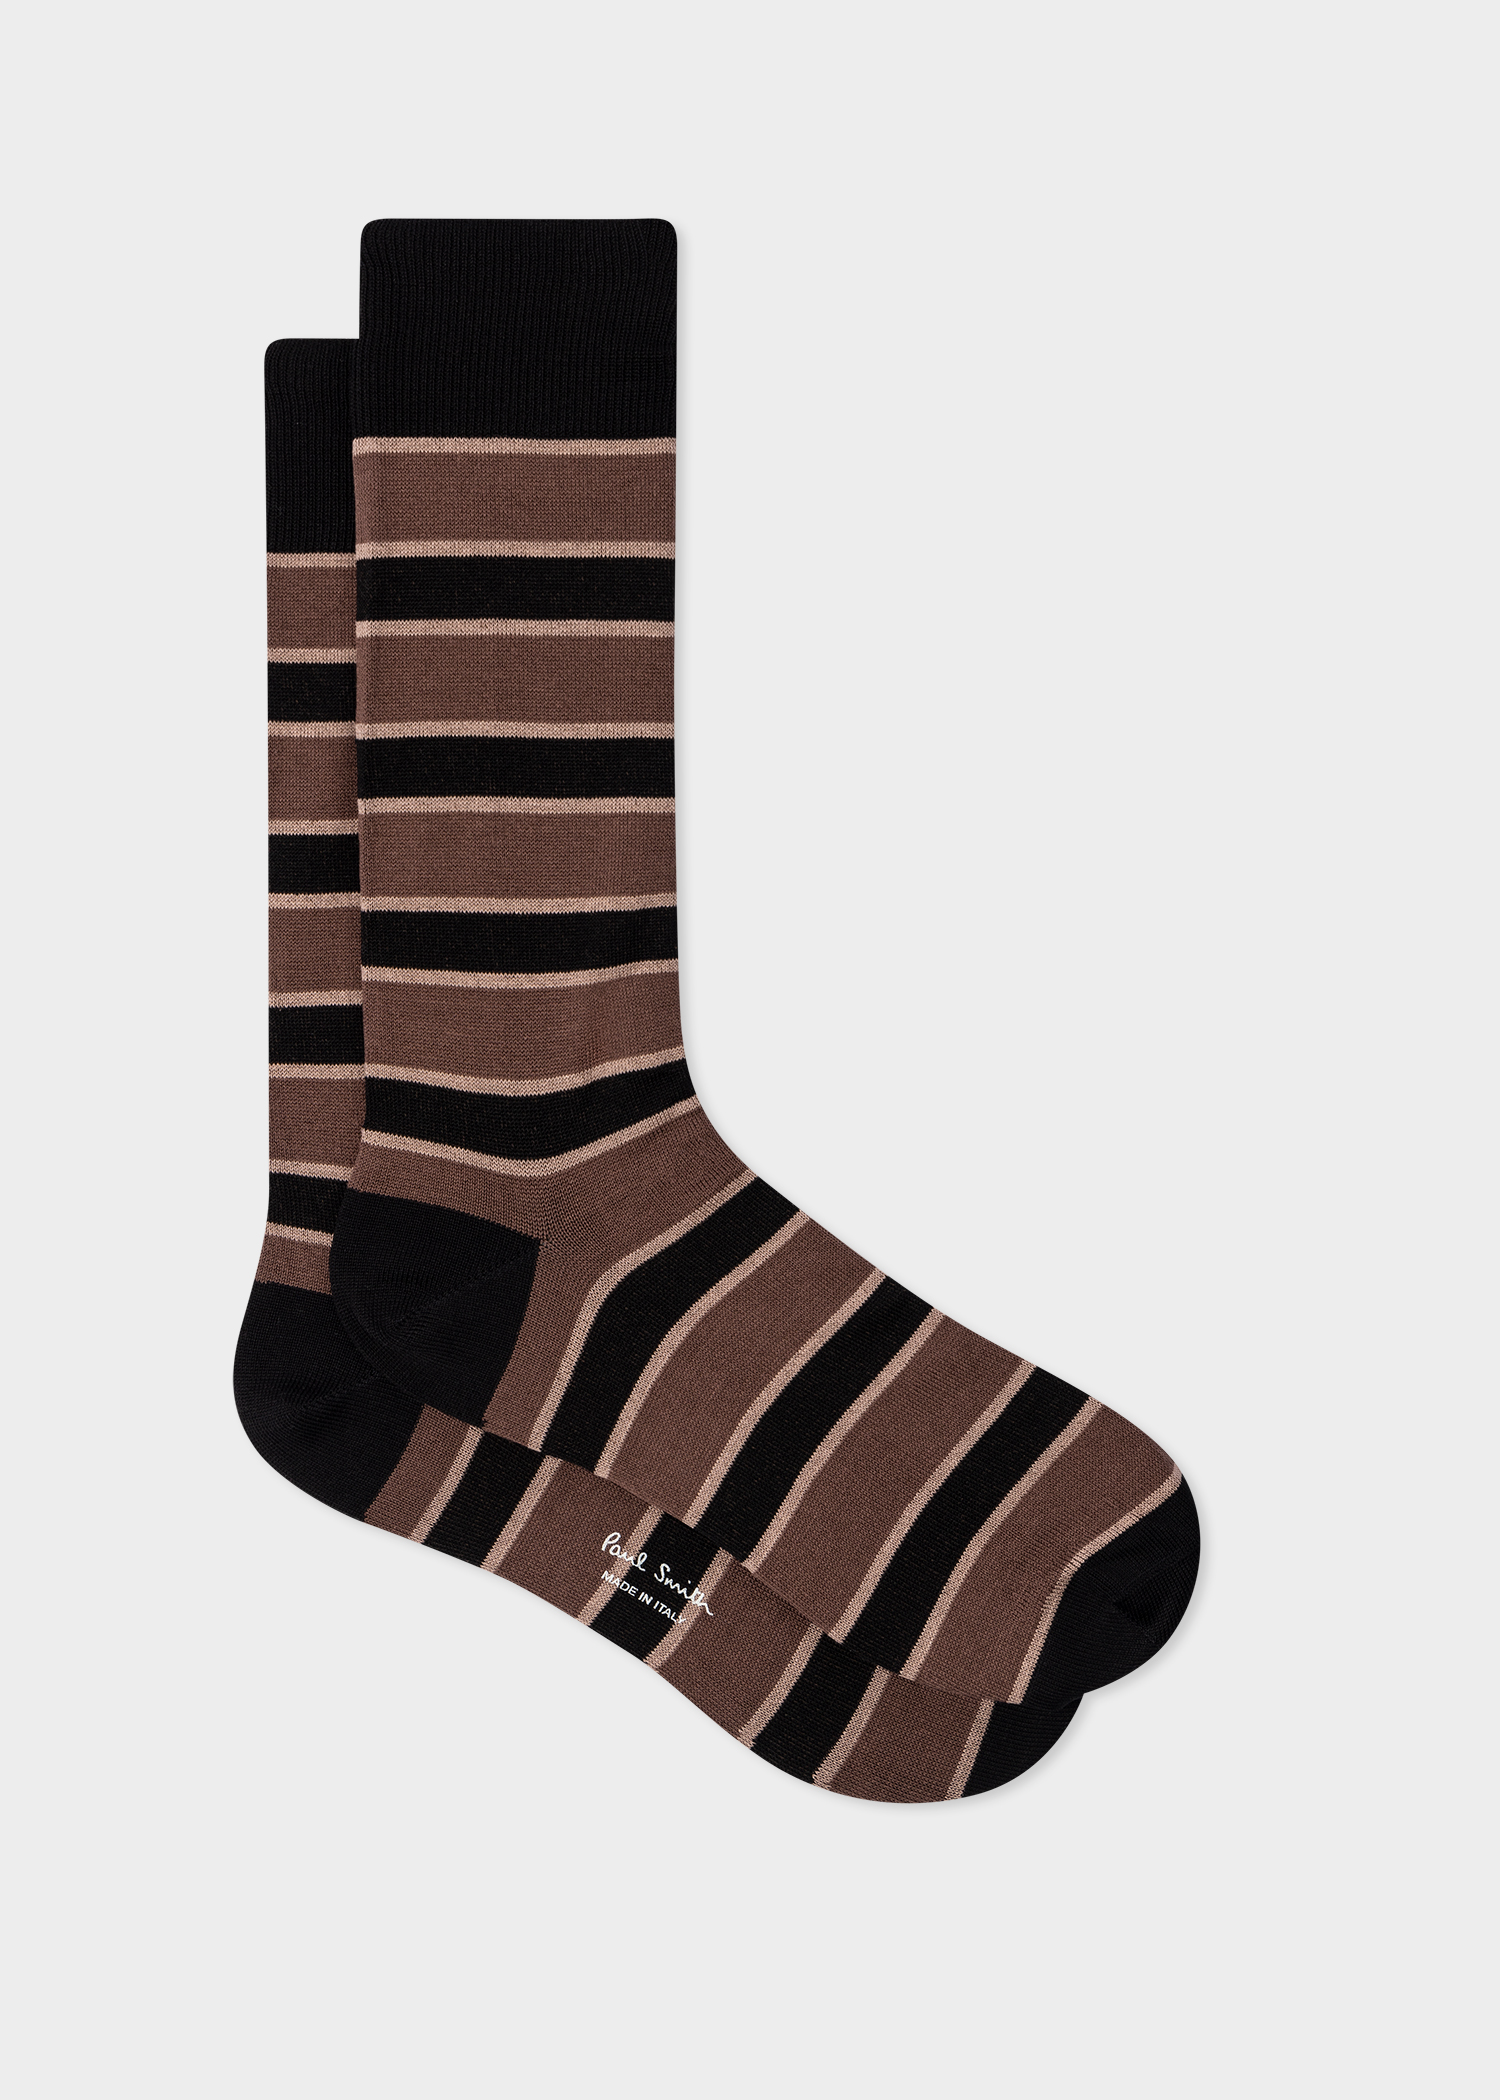 Men's Black and Brown Painted Stripe Socks